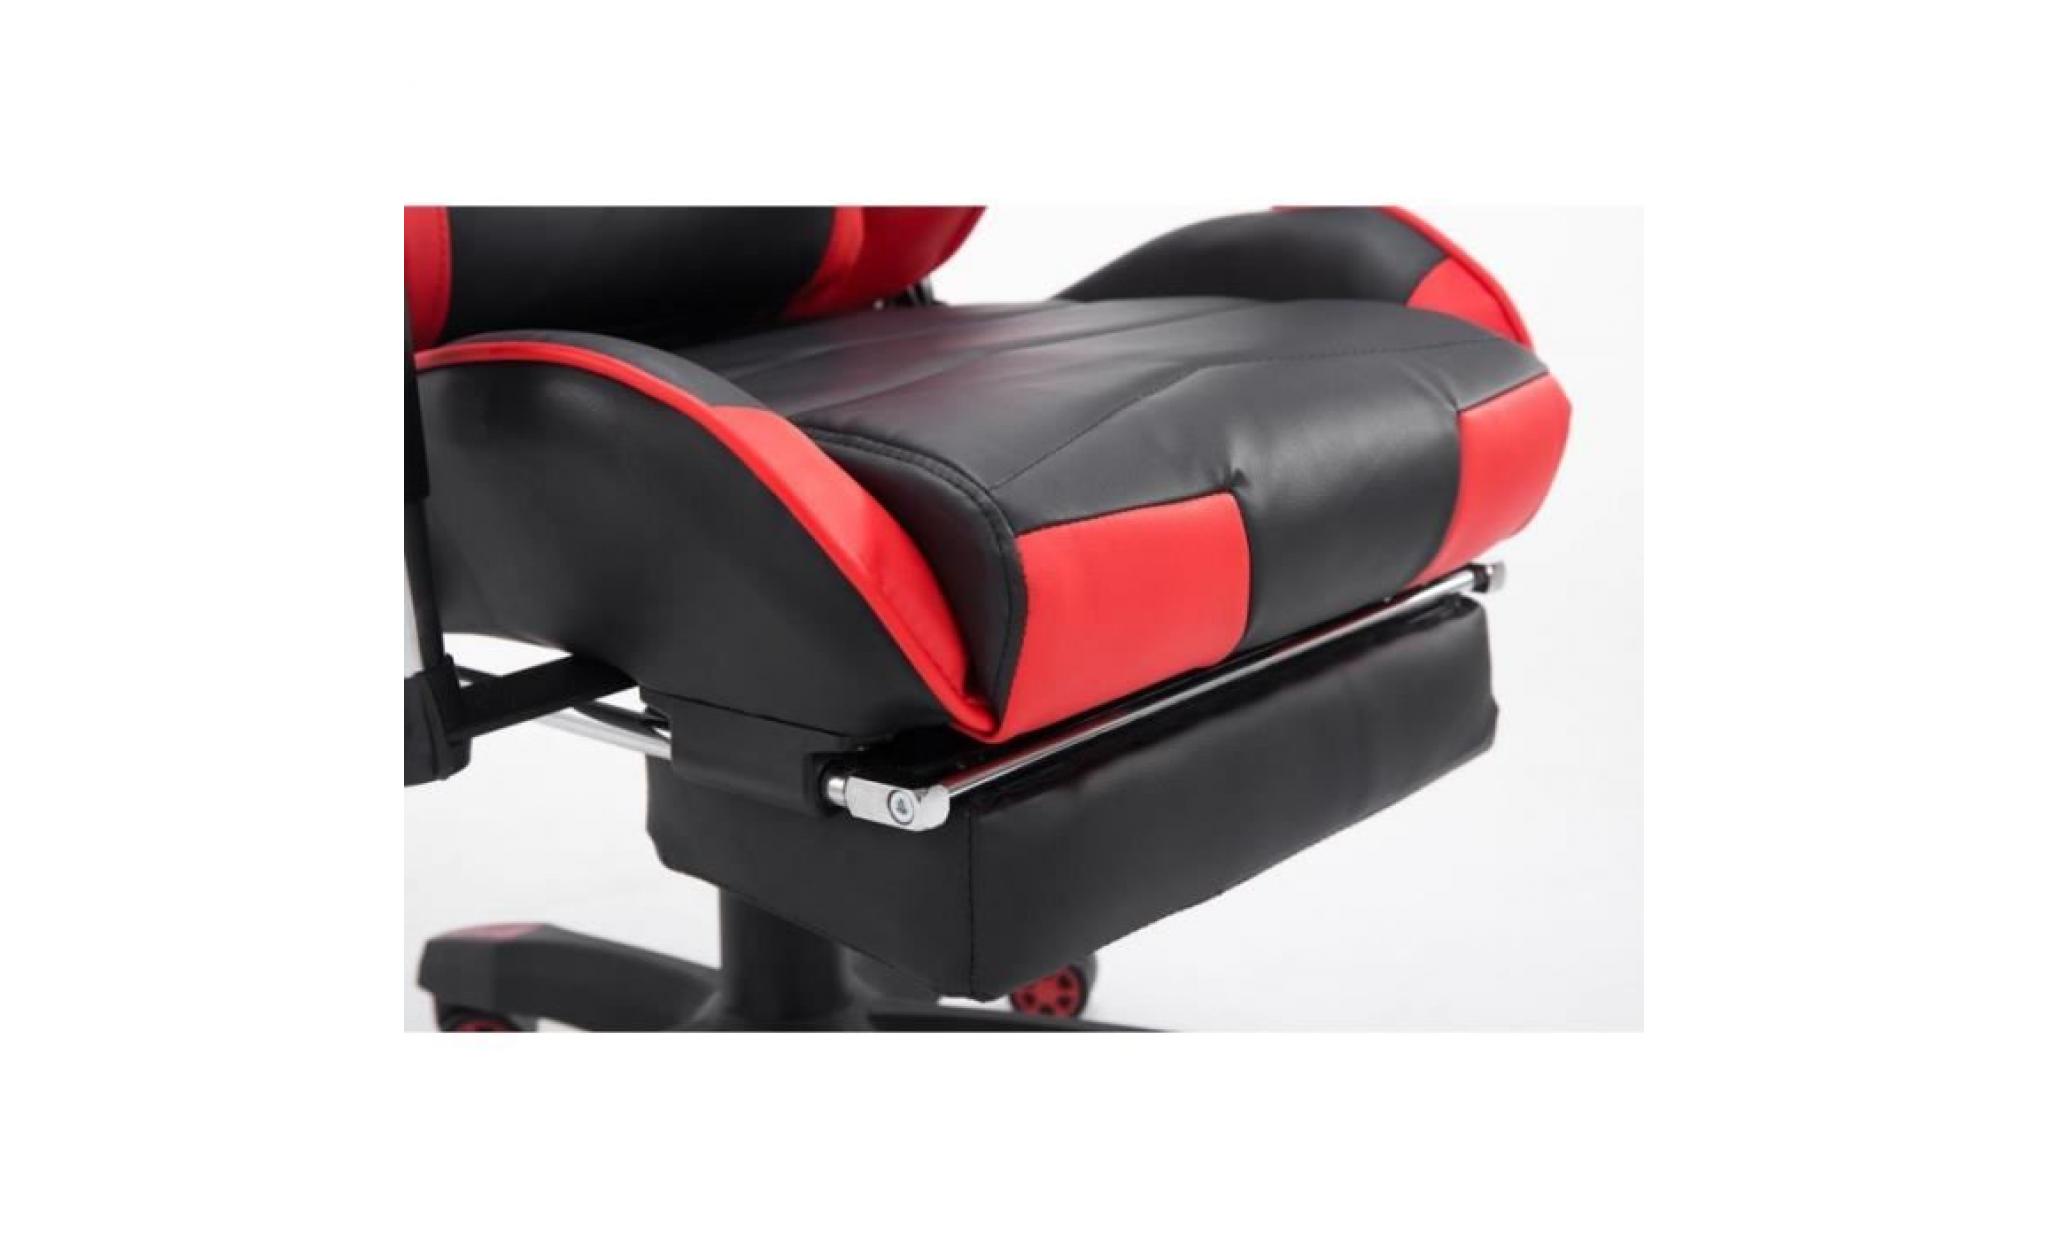 fauteuil de bureau ergonomique dossier réglable avec repose pieds pu noir/marron bur10131 pas cher